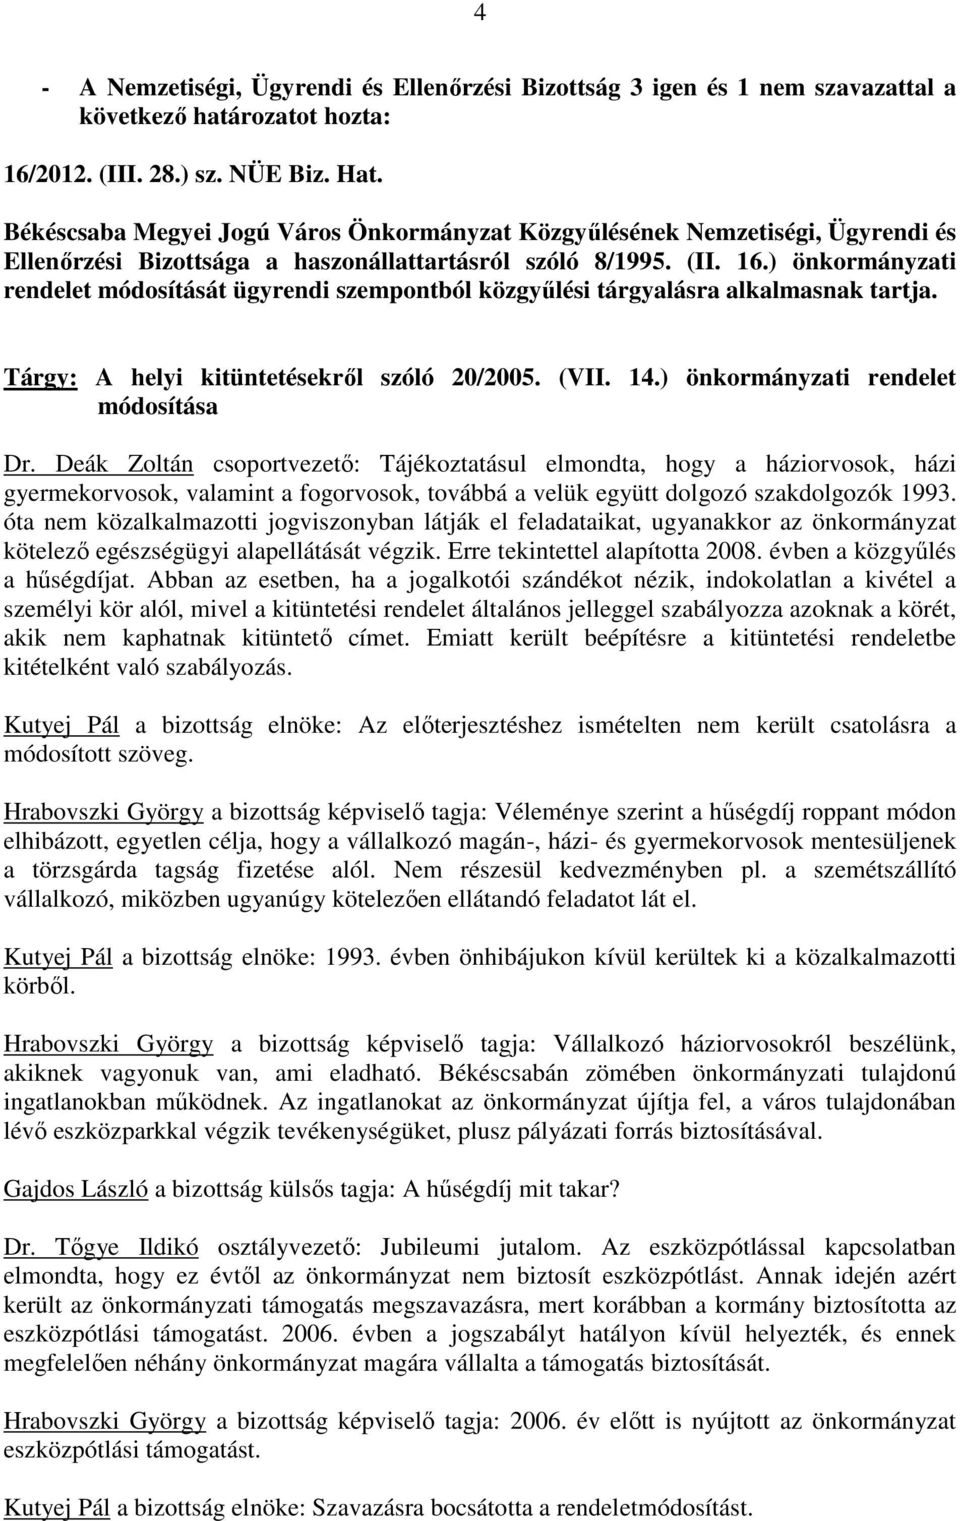 Deák Zoltán csoportvezetı: Tájékoztatásul elmondta, hogy a háziorvosok, házi gyermekorvosok, valamint a fogorvosok, továbbá a velük együtt dolgozó szakdolgozók 1993.